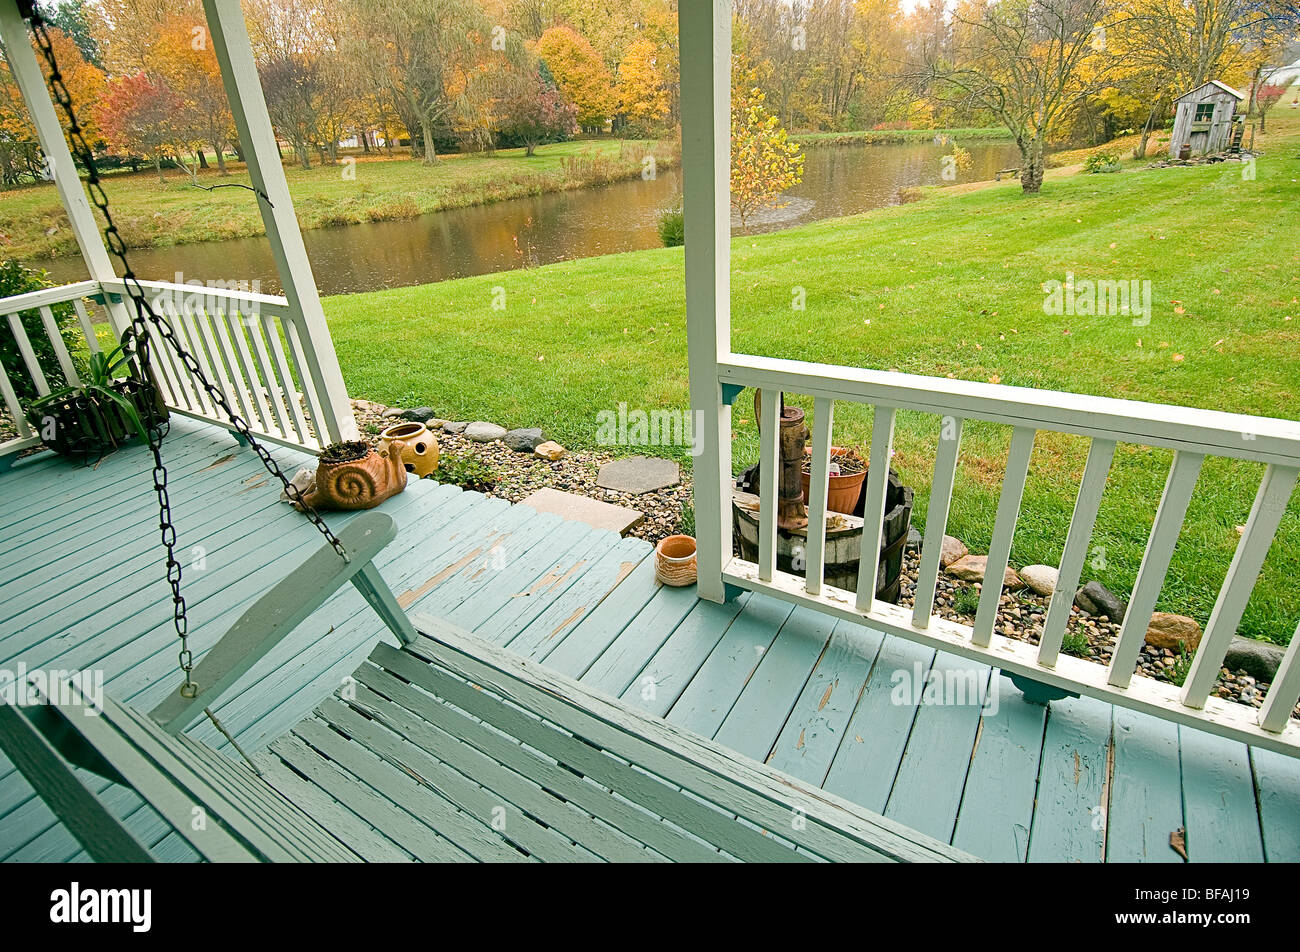 Esta es una imagen de un lluvioso día de otoño en el medio oeste de EE.UU. Tomado de un porche lateral en mi propiedad. Foto de stock